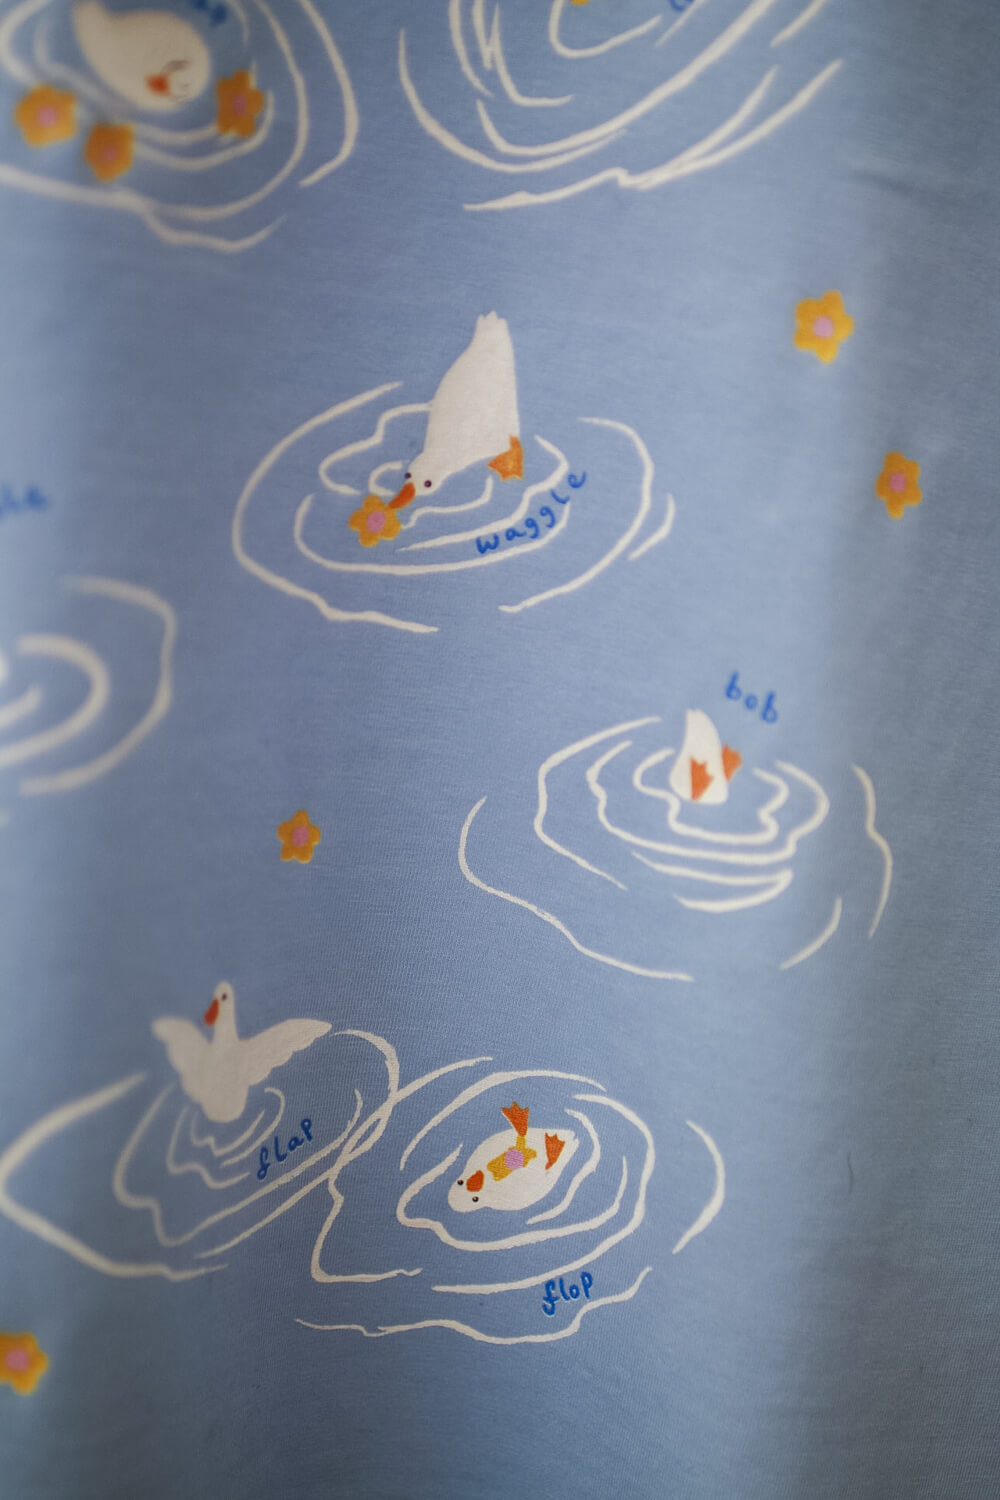 Cute ducks in flowers T-shirt